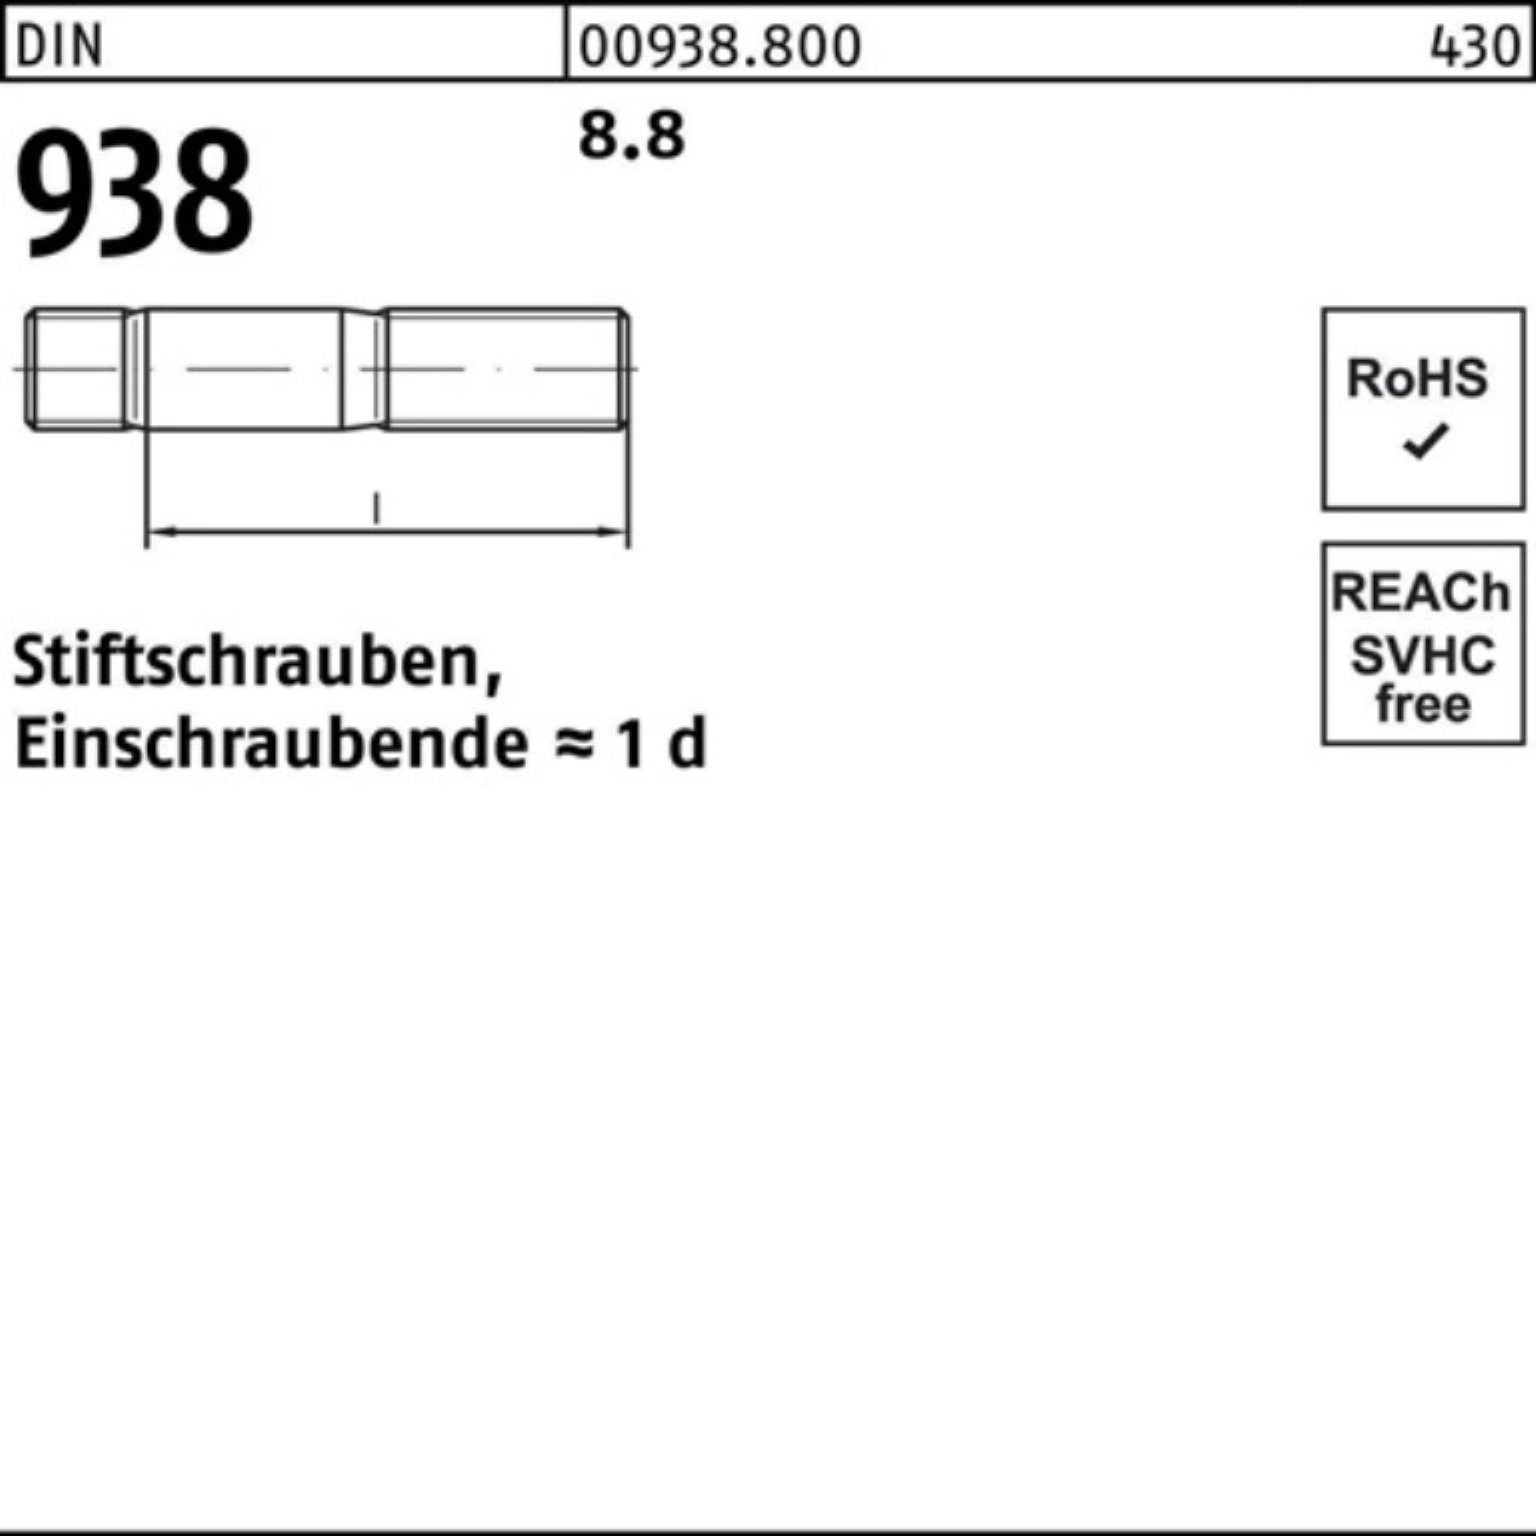 Reyher Stiftschraube 100er Pack DIN 65 Stiftschraube 938 938 Sti 8.8 8.8 10 M24x DIN Stück